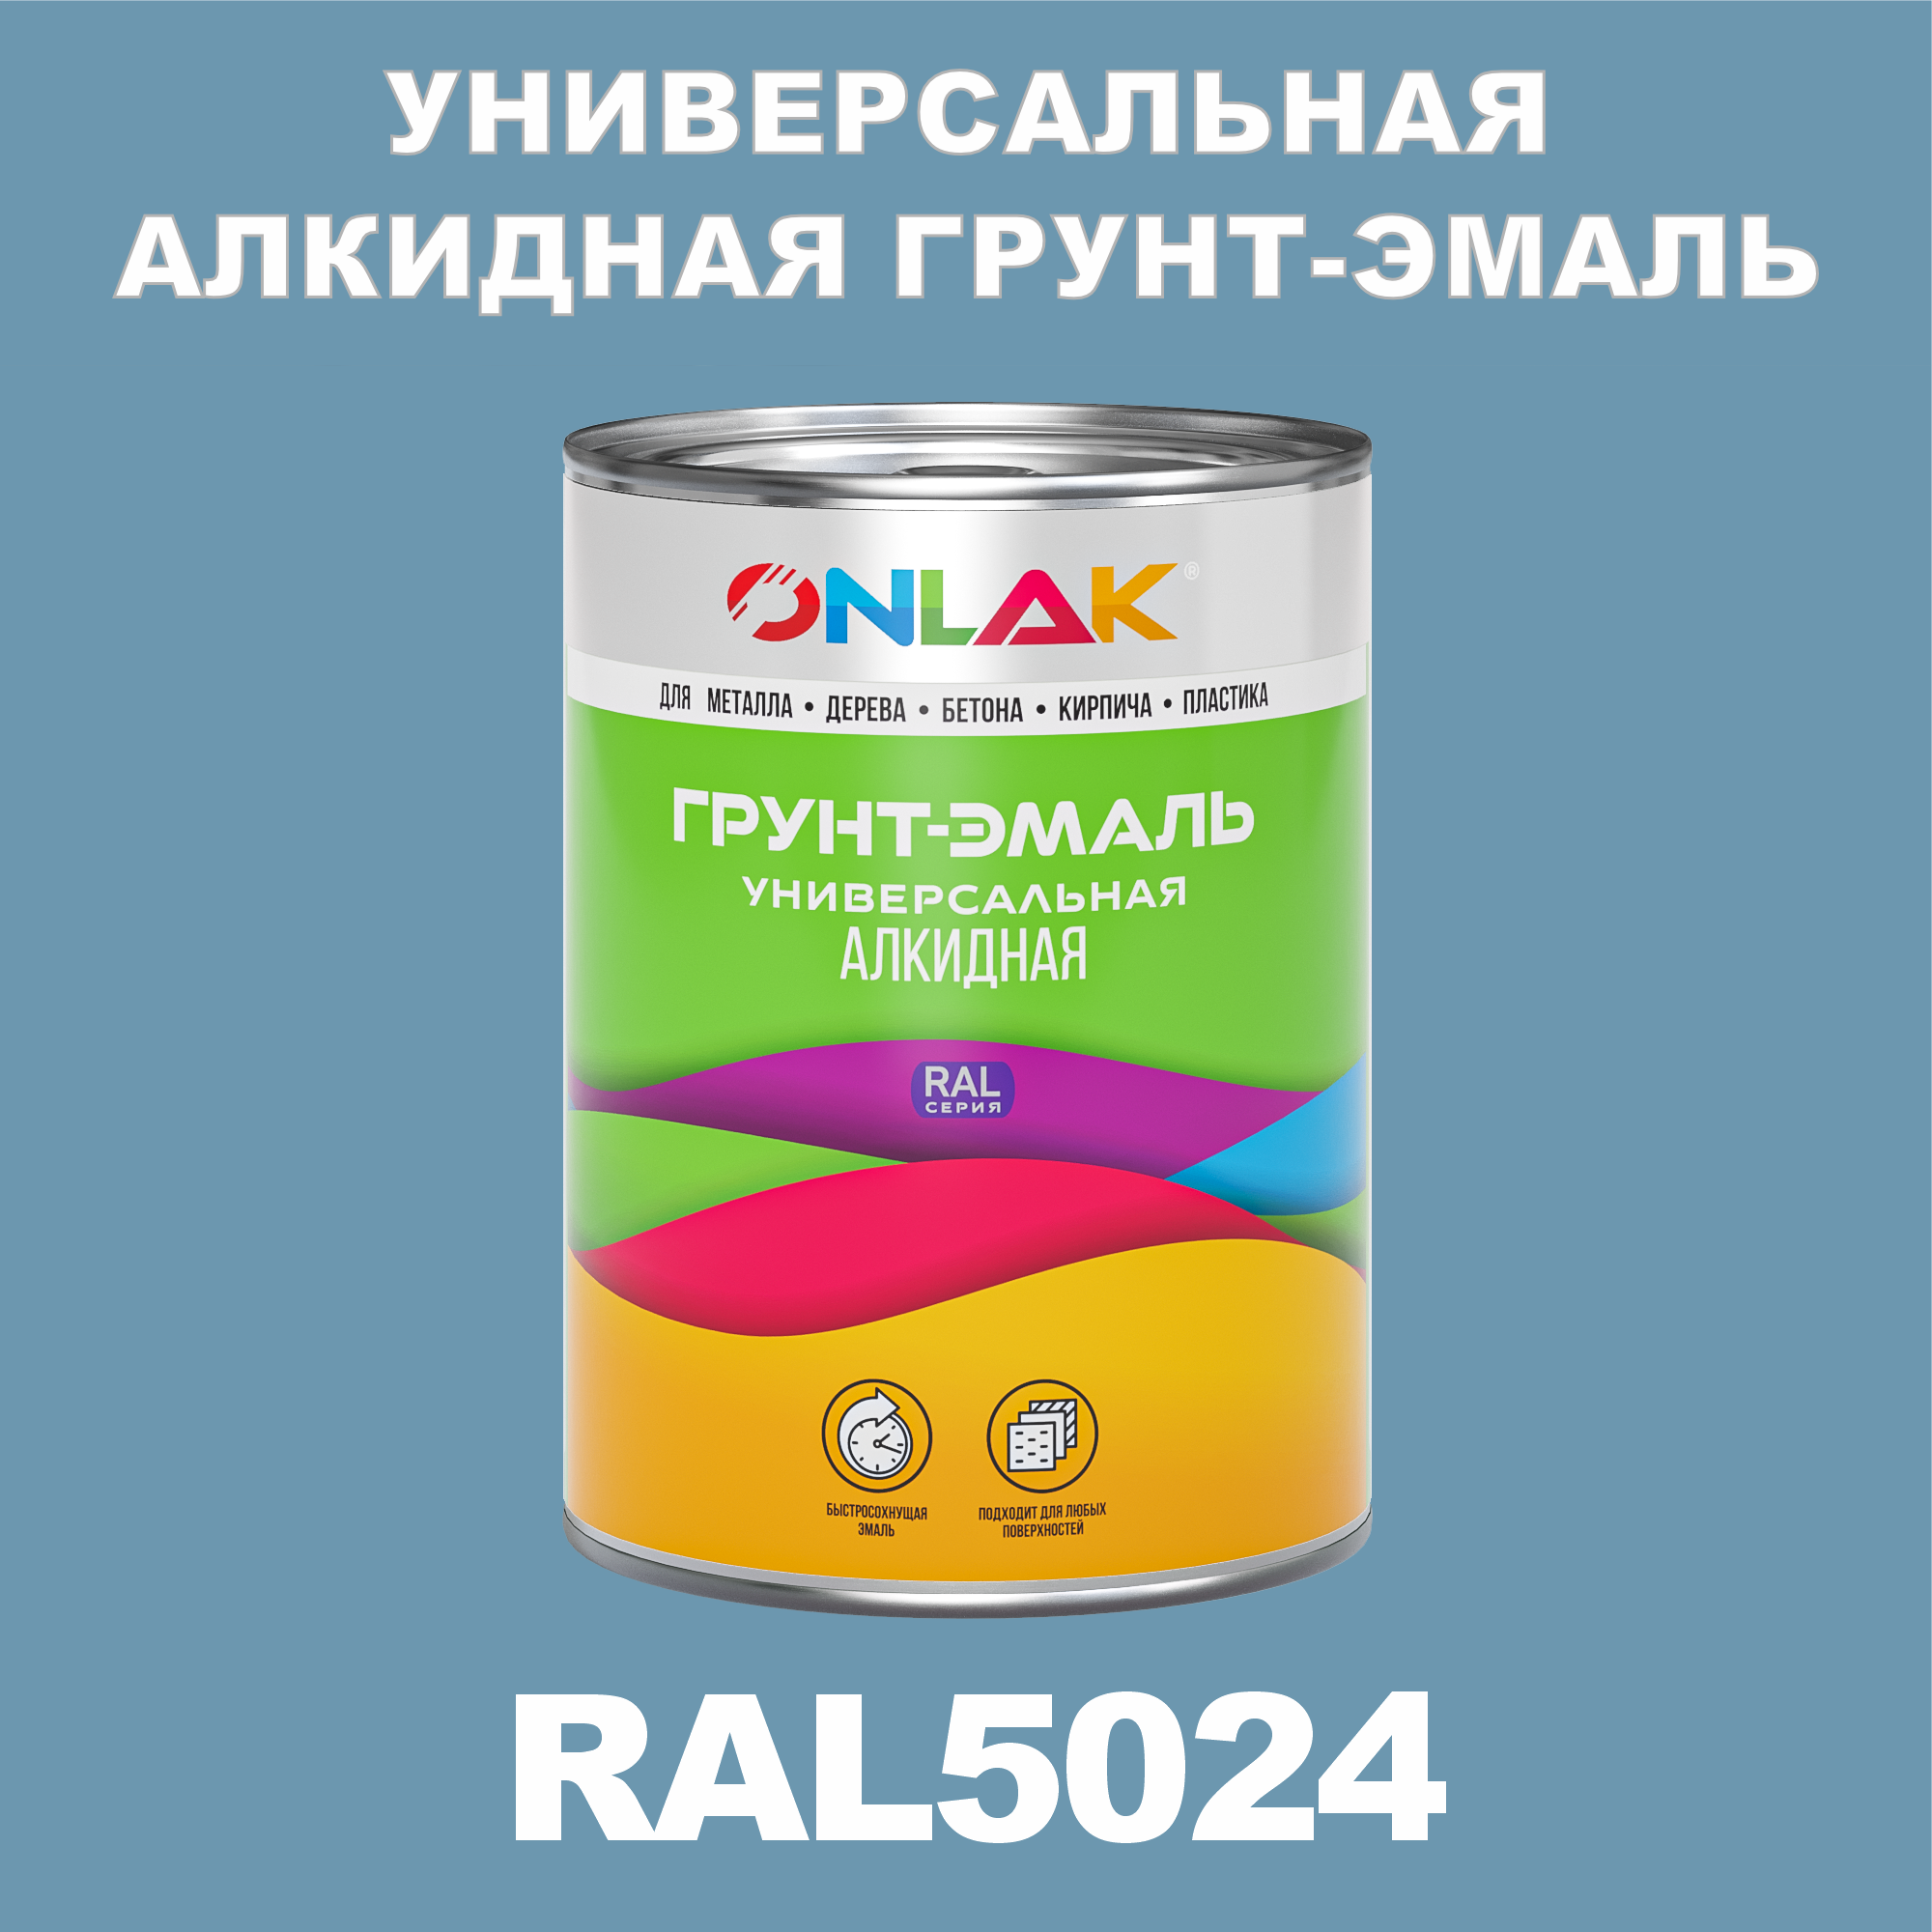 Грунт-эмаль ONLAK 1К RAL5024 антикоррозионная алкидная по металлу по ржавчине 1 кг грунт эмаль аэрозольная престиж 3в1 алкидная коричневая ral 8017 425 мл 0 425 кг